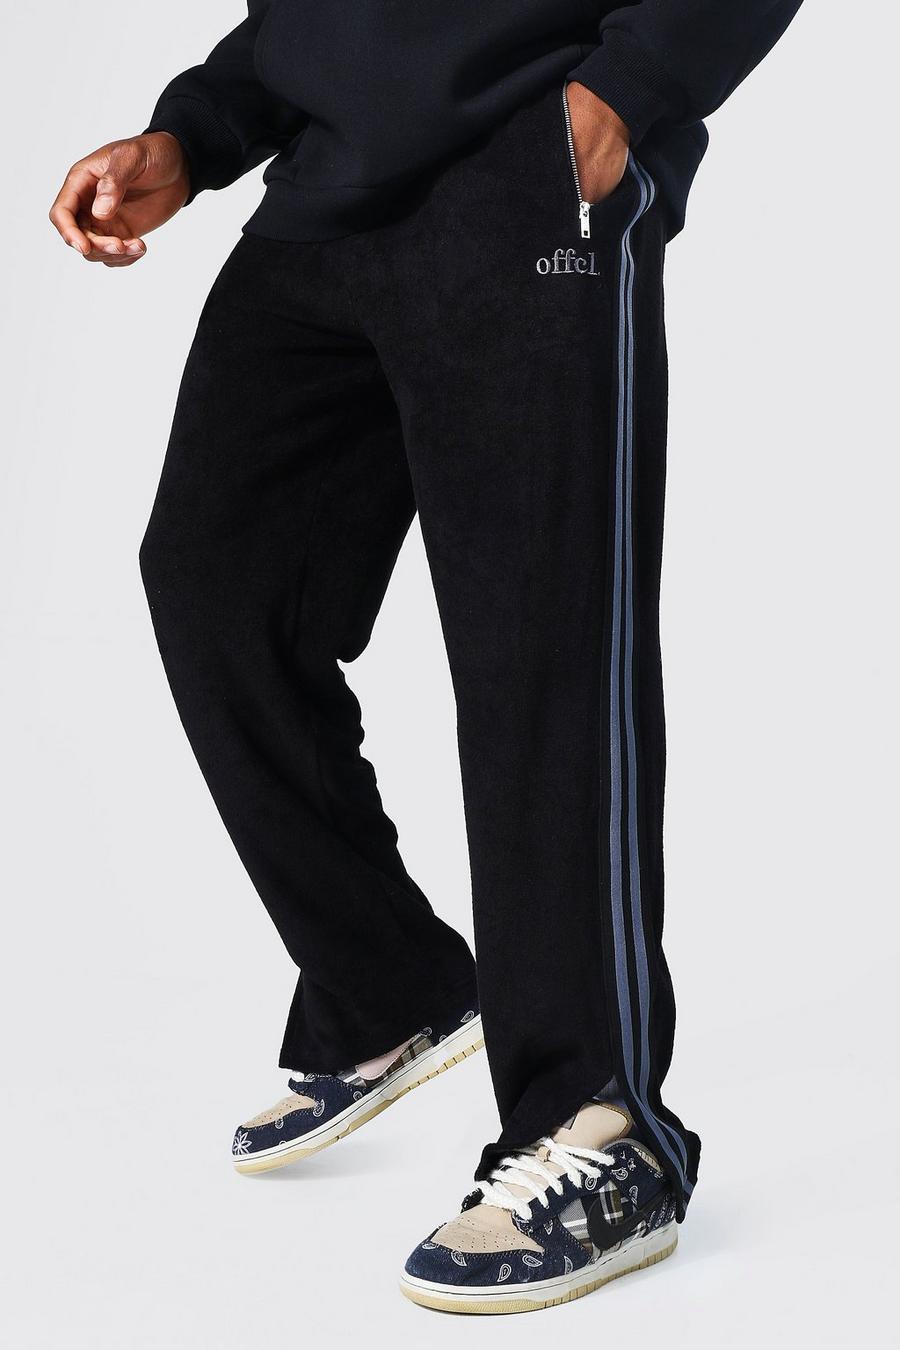 Pantalón deportivo Official de felpa con holgura ancha y abertura en el bajo, Black negro image number 1